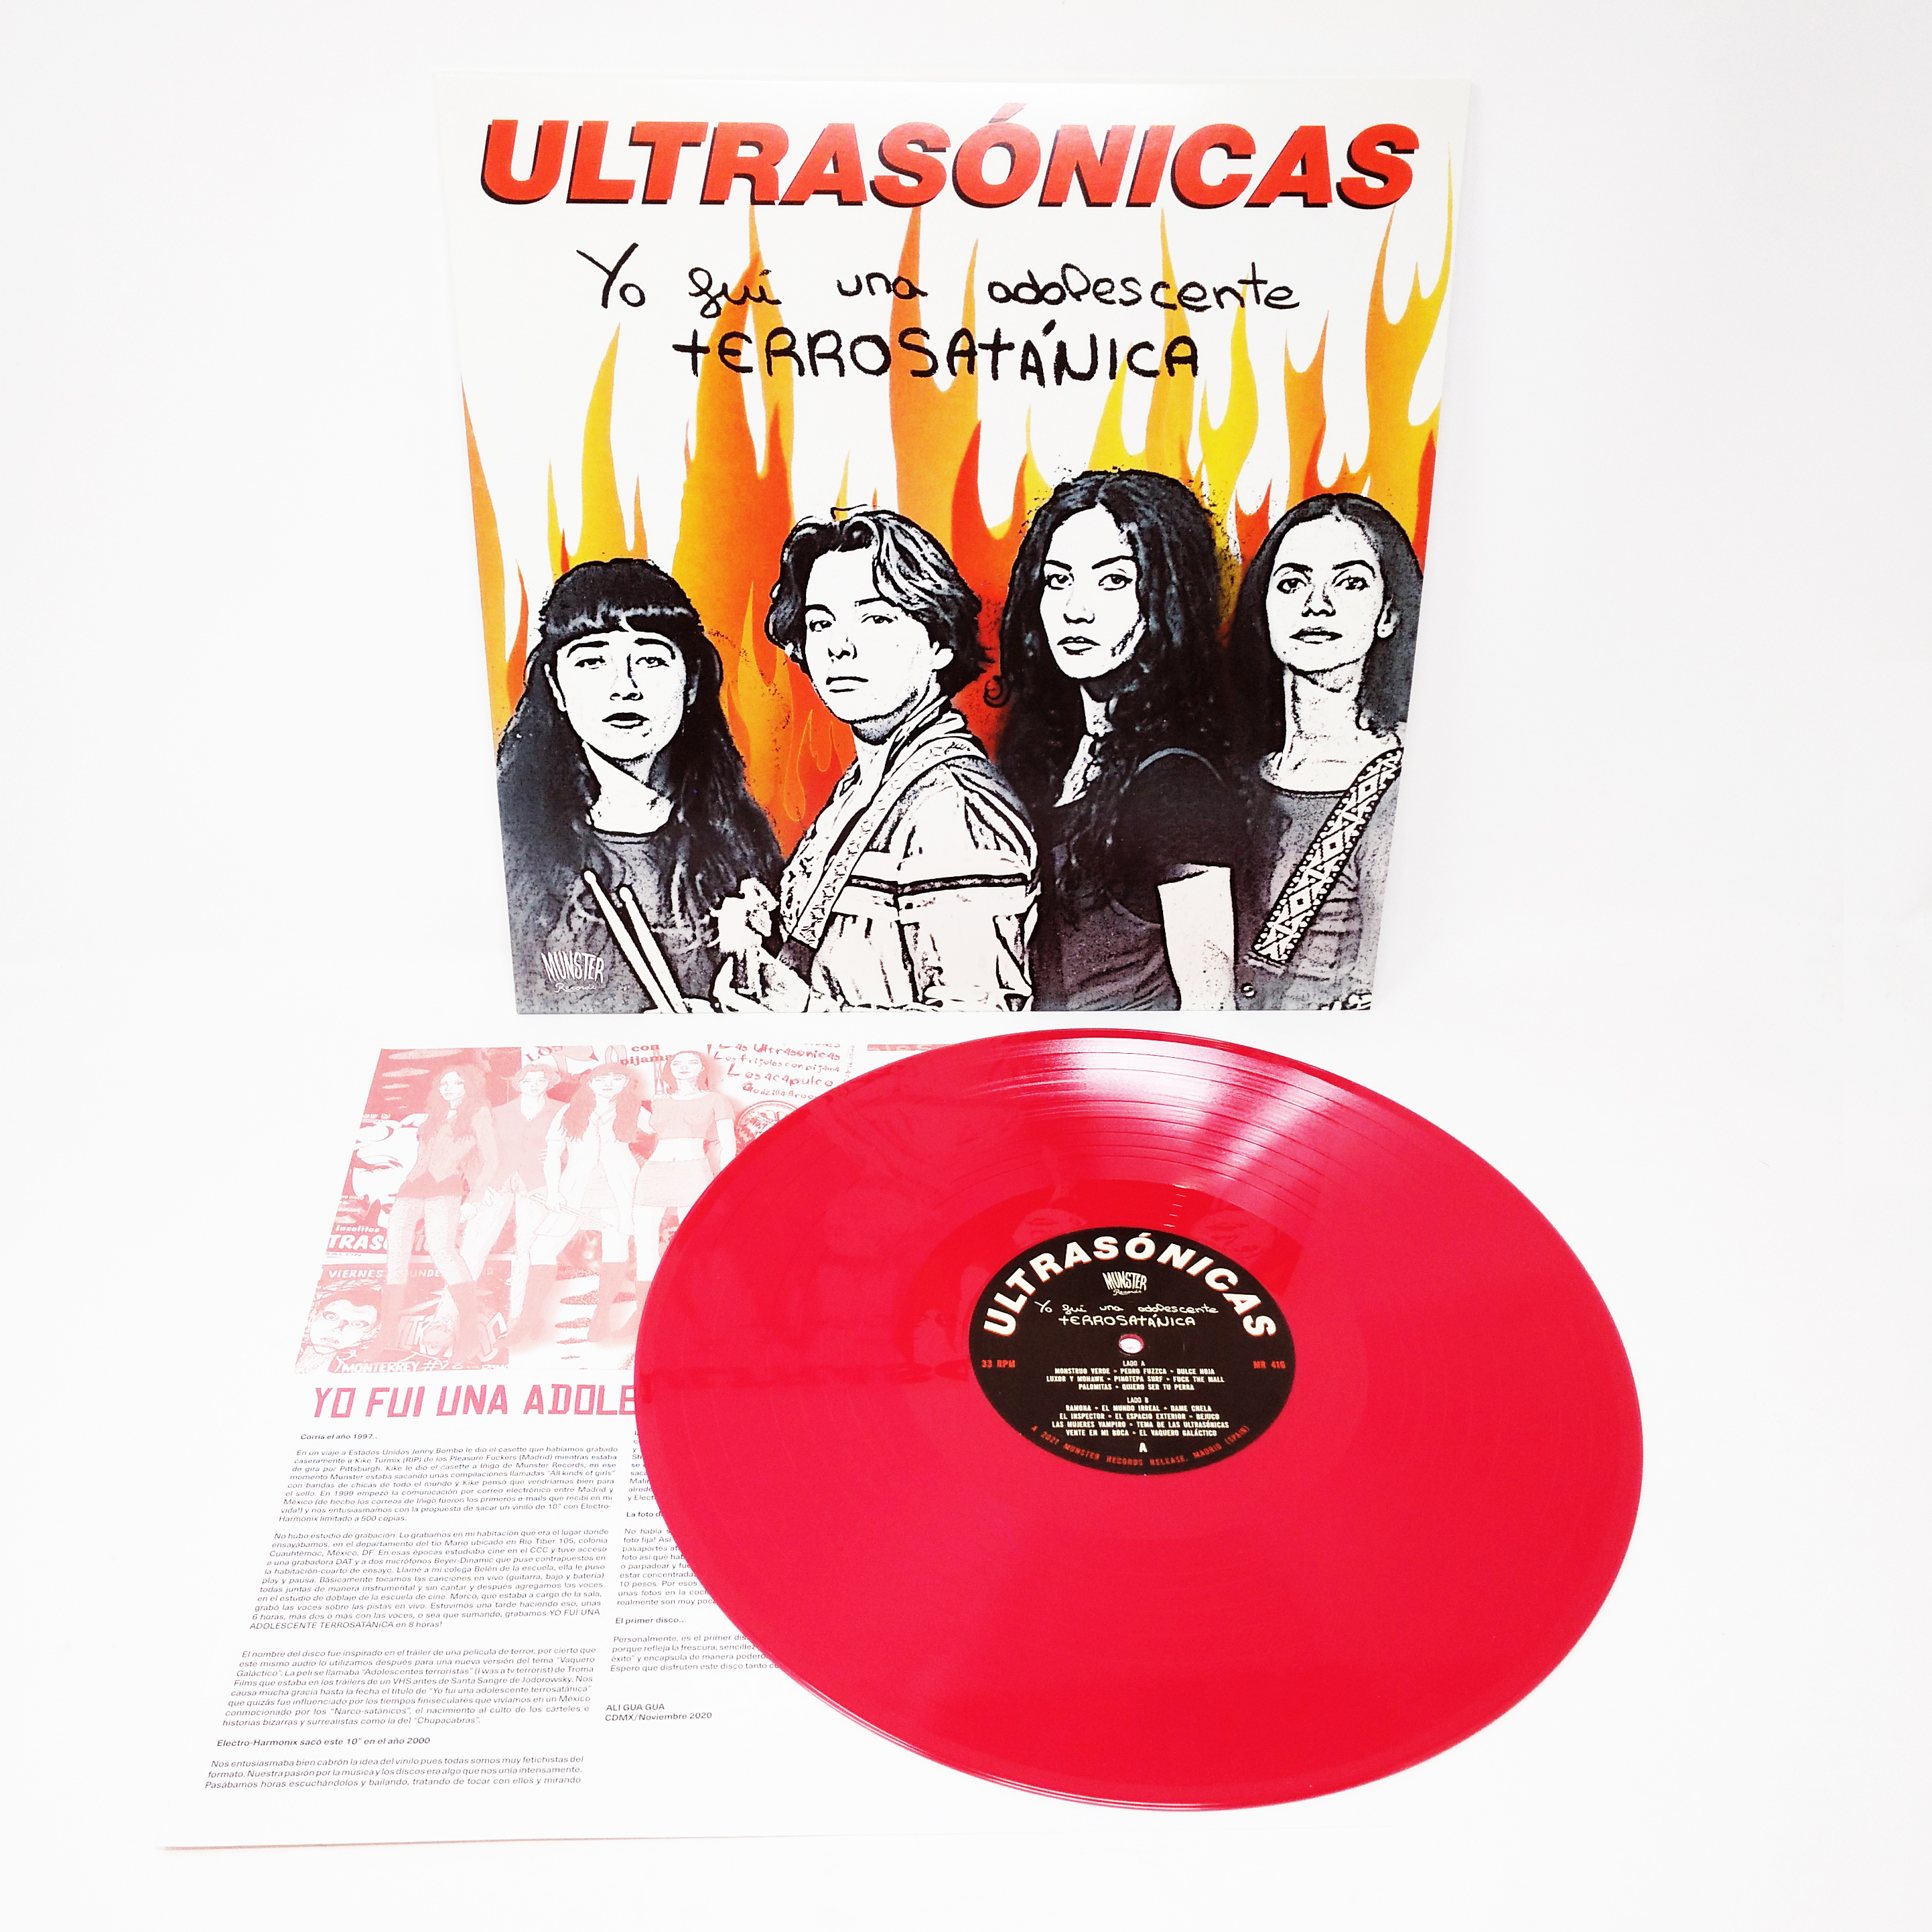 Munster Records on Twitter: "Reedición de las grabaciones de las  Ultrasónicas, una banda clásica del underground rockero mexicano de los 90  con influencias rock and roll, garage, surf y punk, junto al